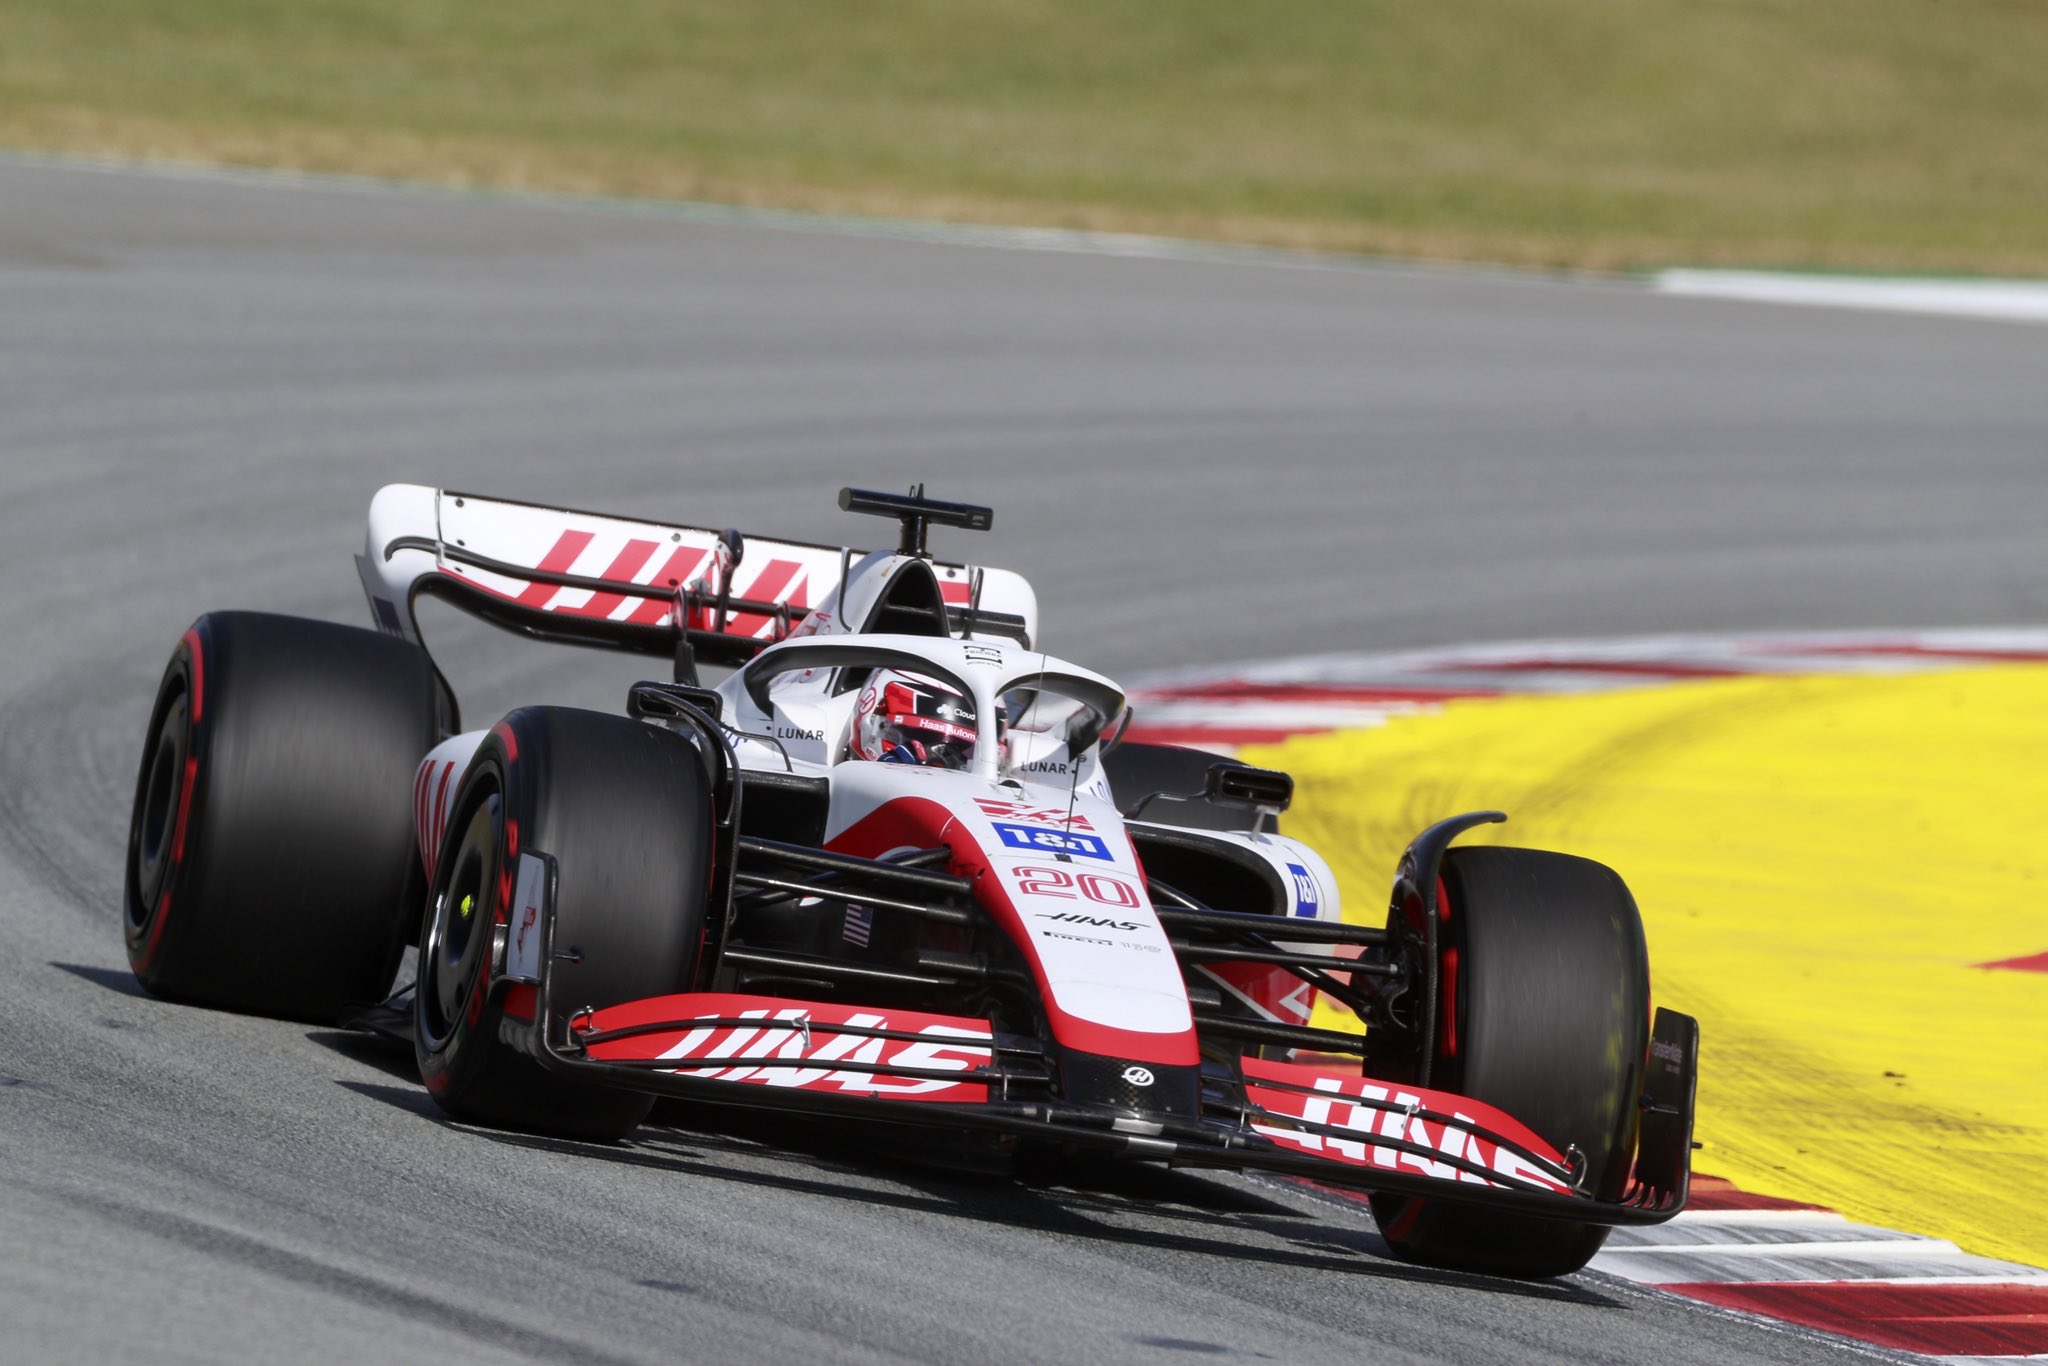 Magnussen cita a Haas ‘doble Q3’ en España, pero ‘puede ser mejor’ – Fórmula 1 noticias